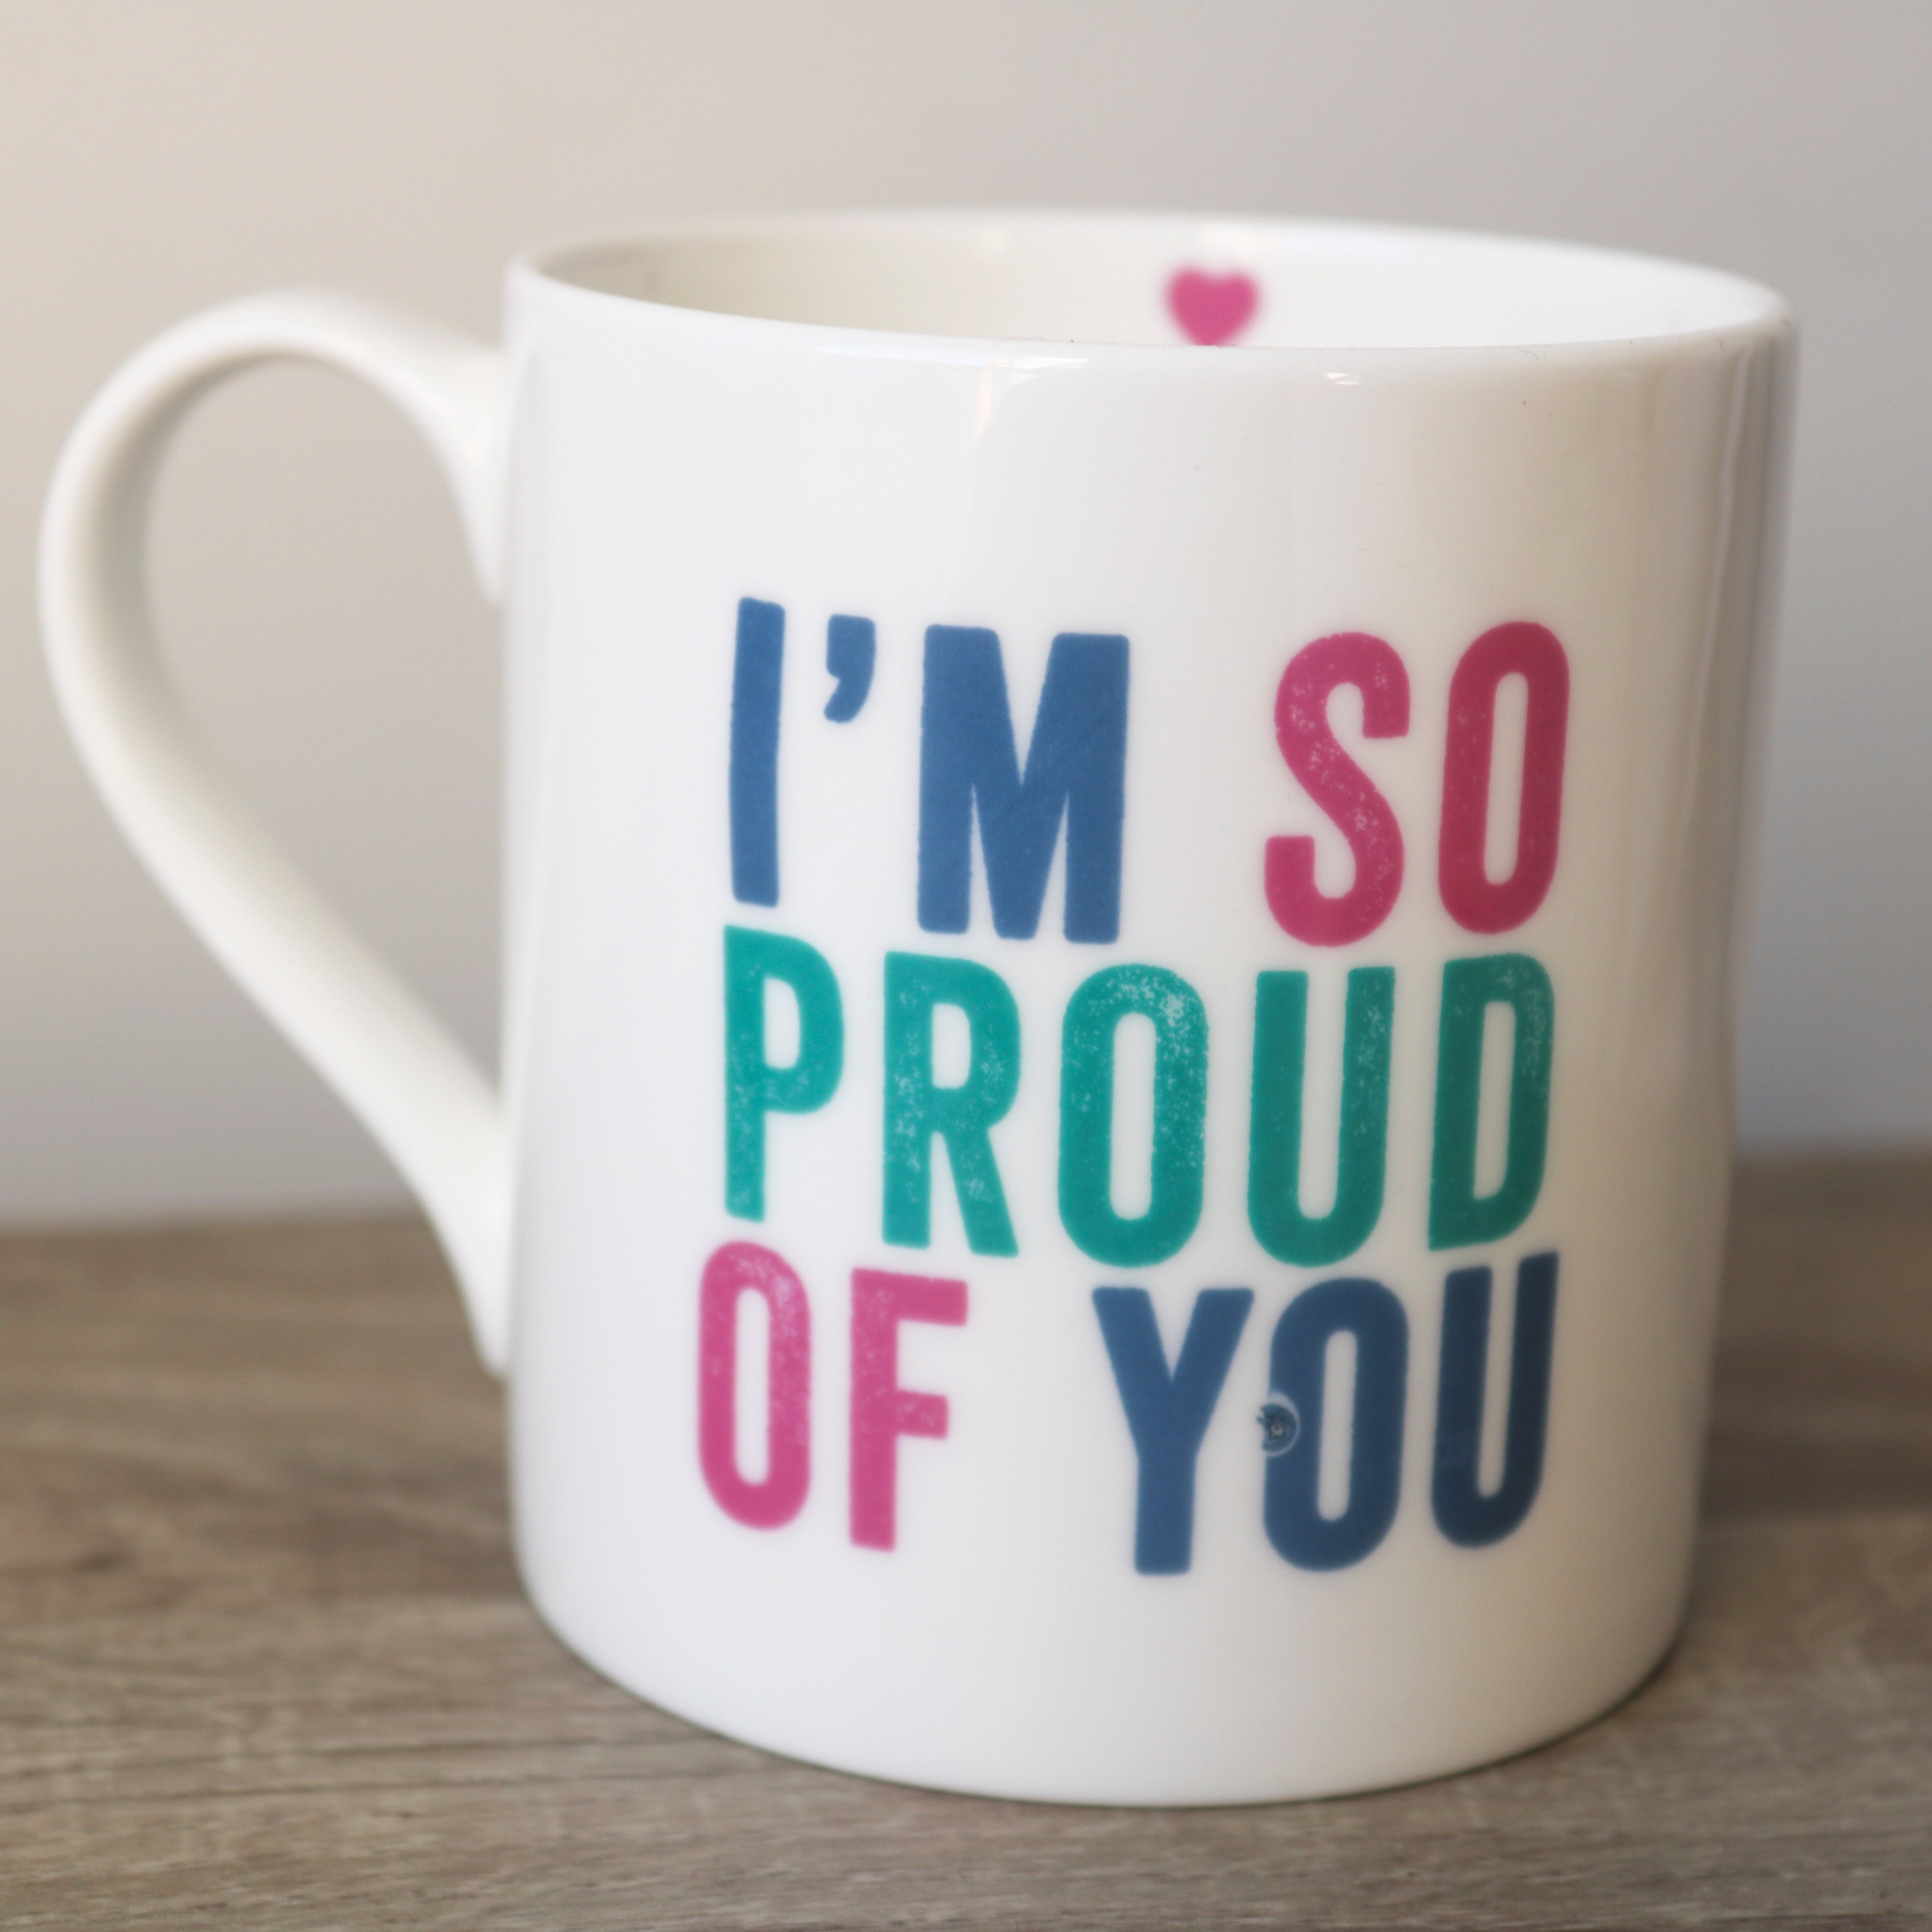 I'm So Proud of You Large Mug